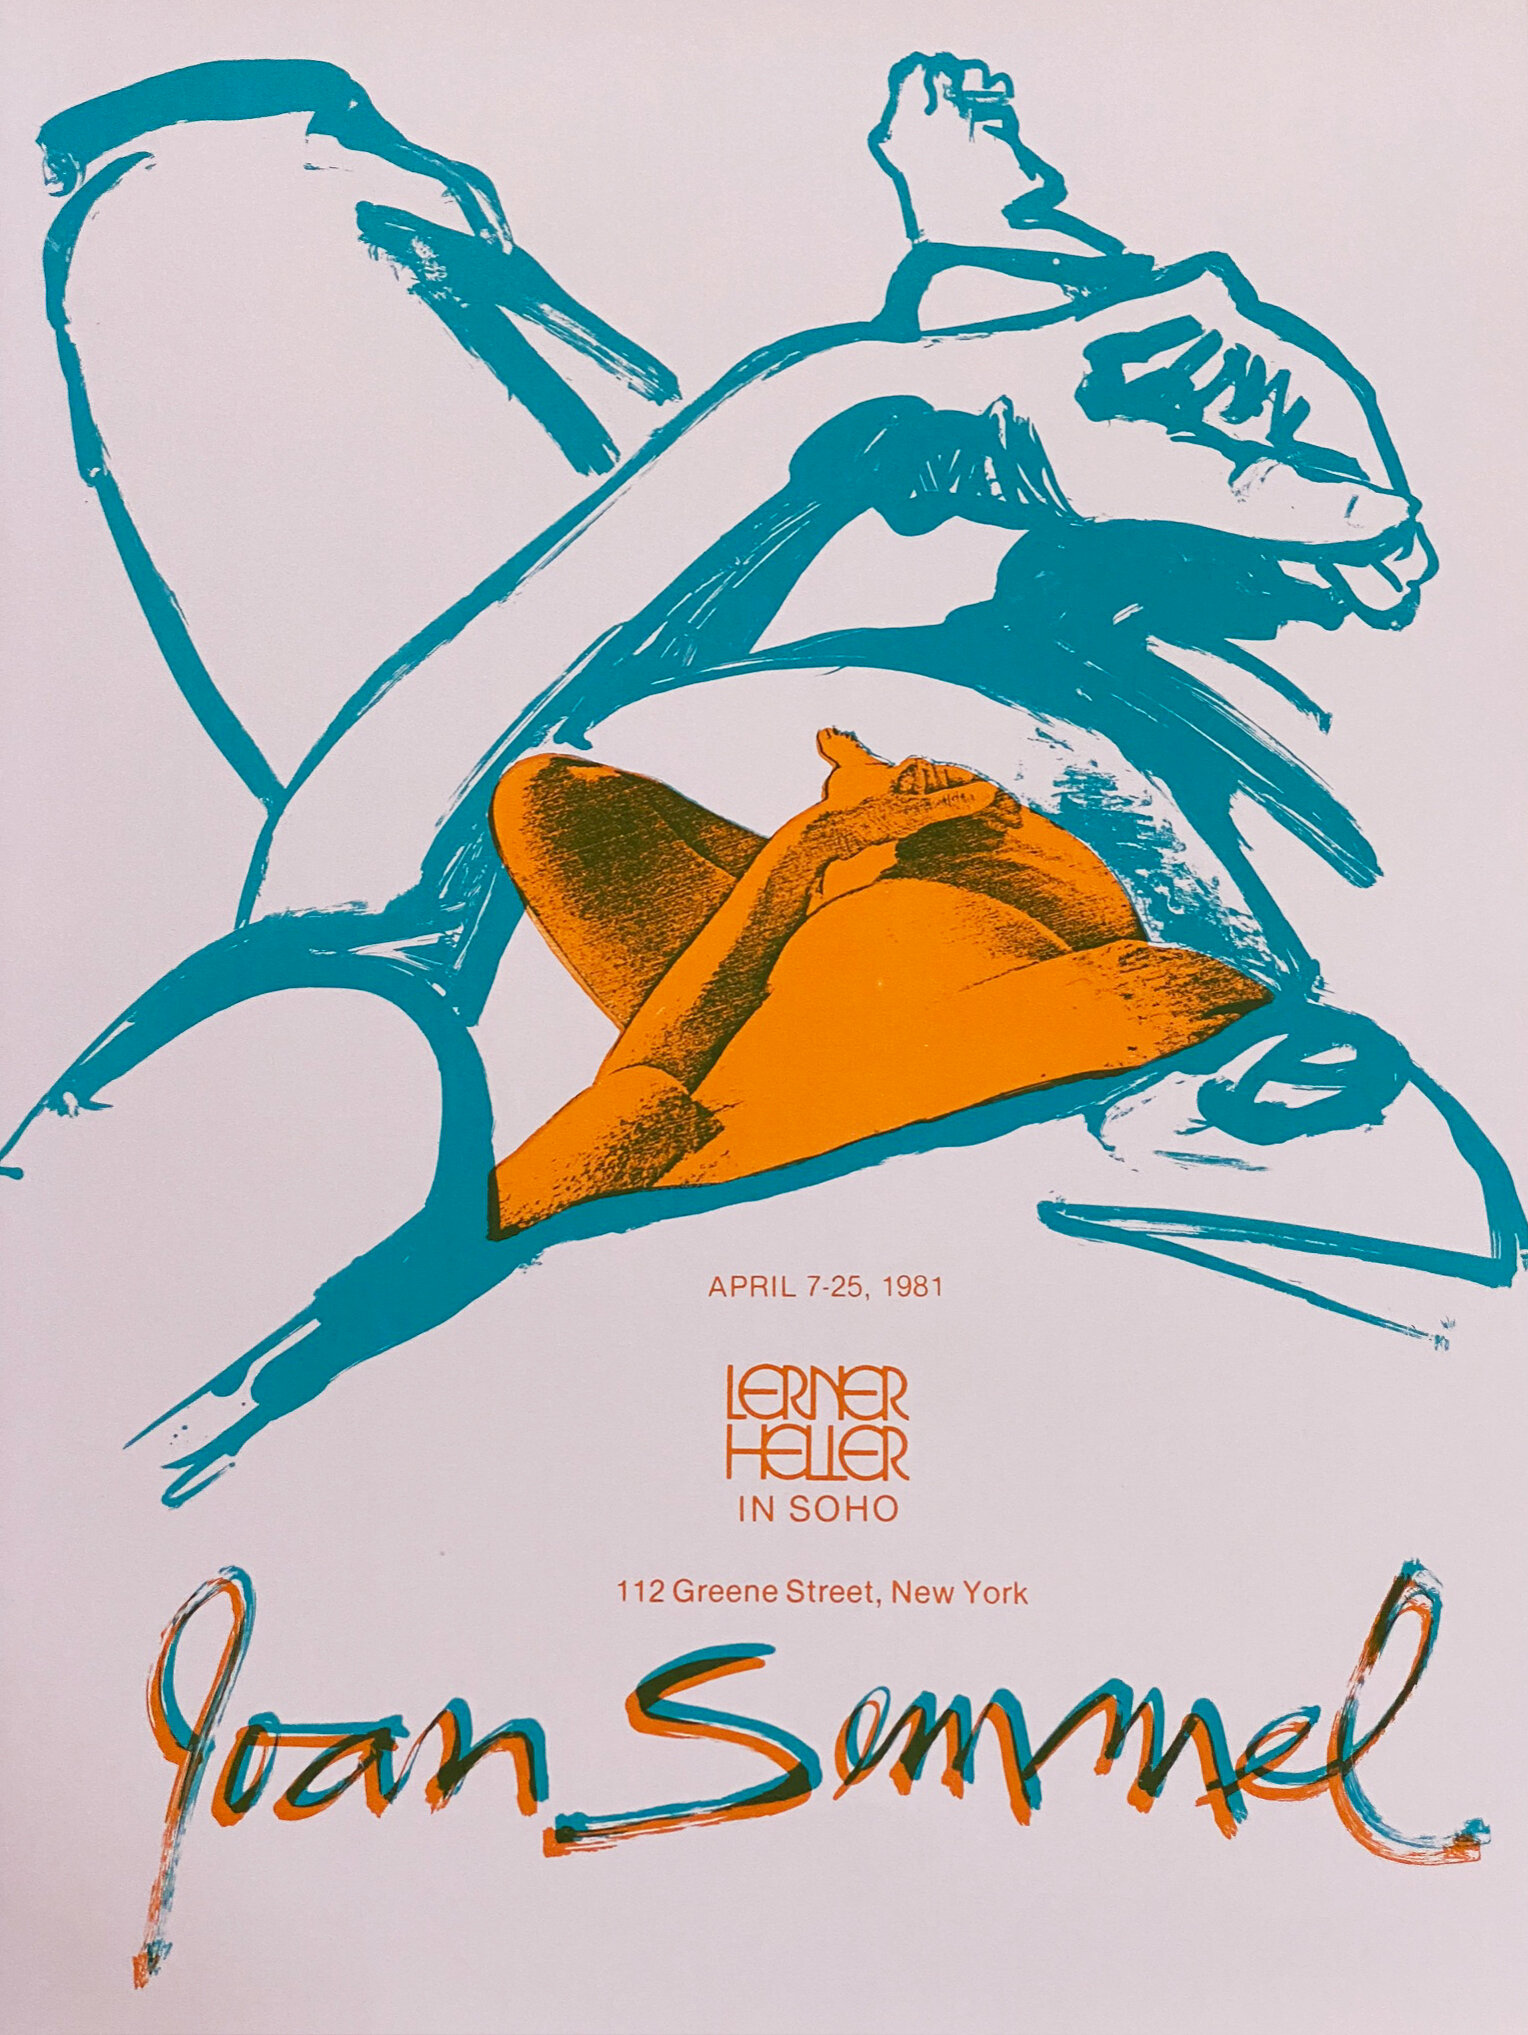 Joan Semmel, Lerner Heller exhibition poster, 1981